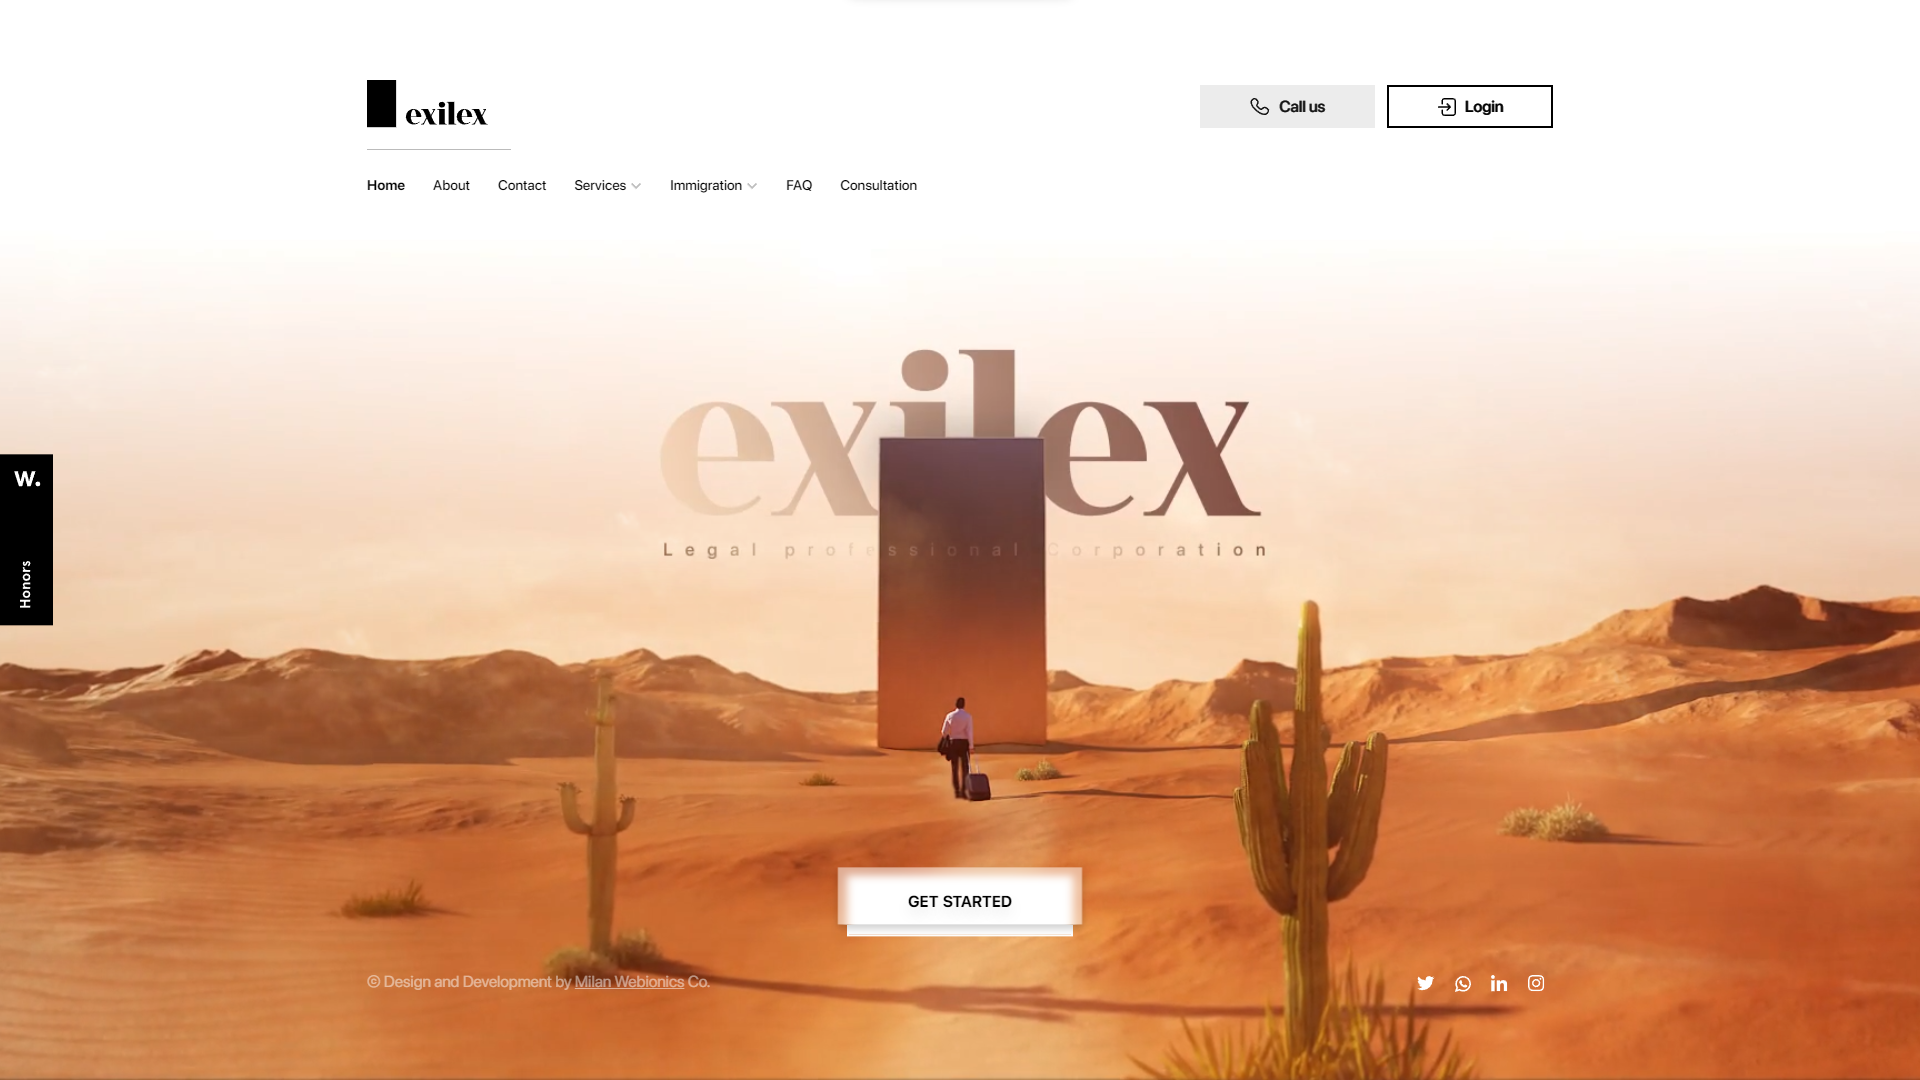 Exilex legal co. Business & corporate 3d